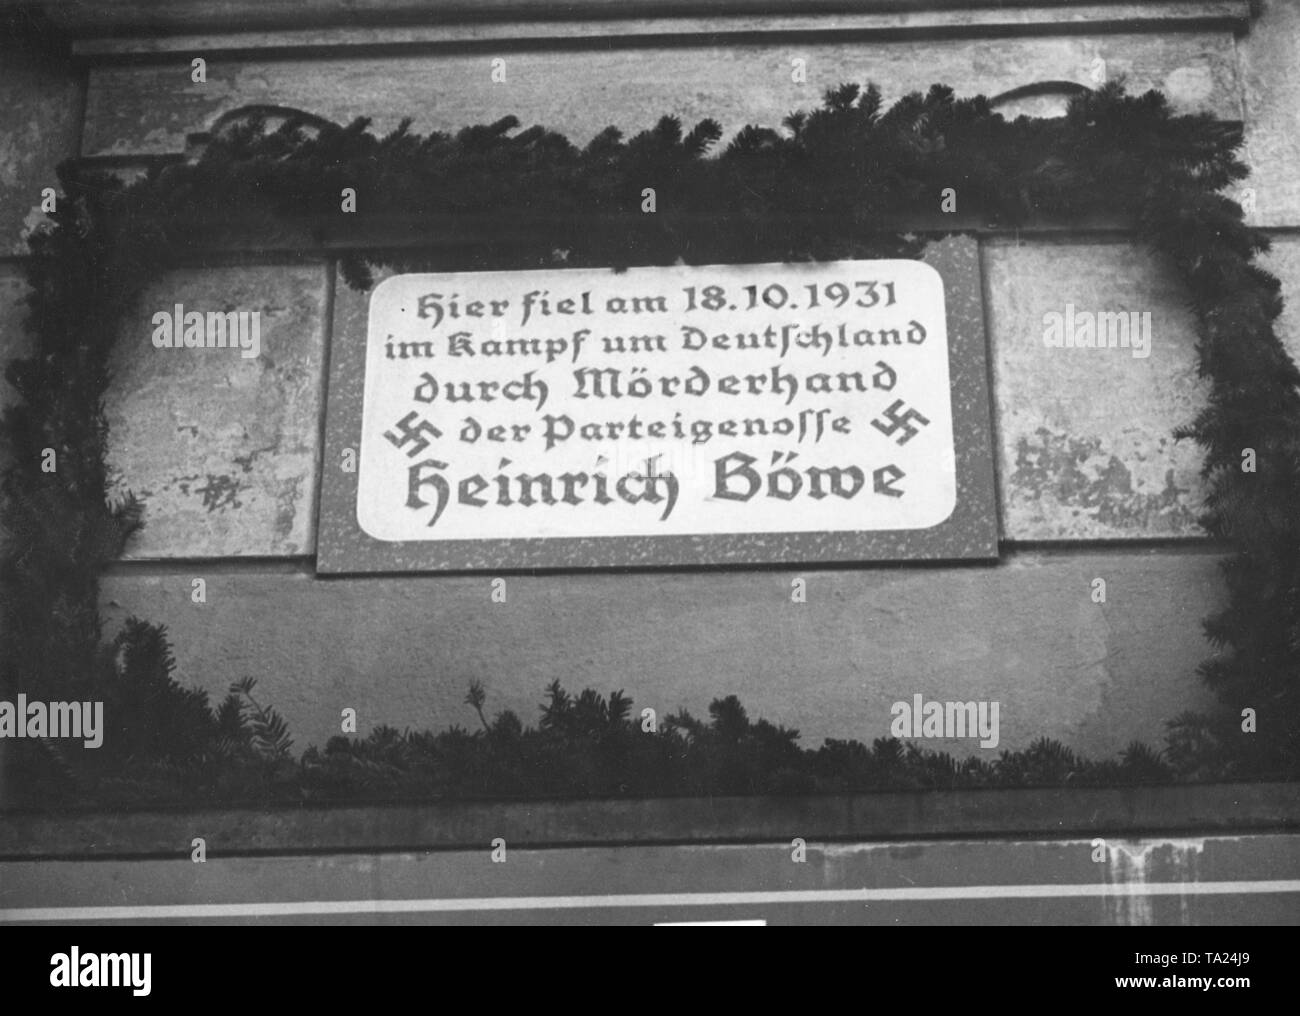 Diese Gedenktafel für Heinrich Boewe, die in Straßenschlachten getötet worden war, wurde 1934 in der Richardstrasse 35 in Neukölln eröffnet von Obergruppenfuehrer von Jagow. Die Inschrift lautet: "Am 18. Oktober 1931, während der Schlacht um Deutschland, der parteichef Heinrich Boewe starb in den Händen eines Mörders." Stockfoto